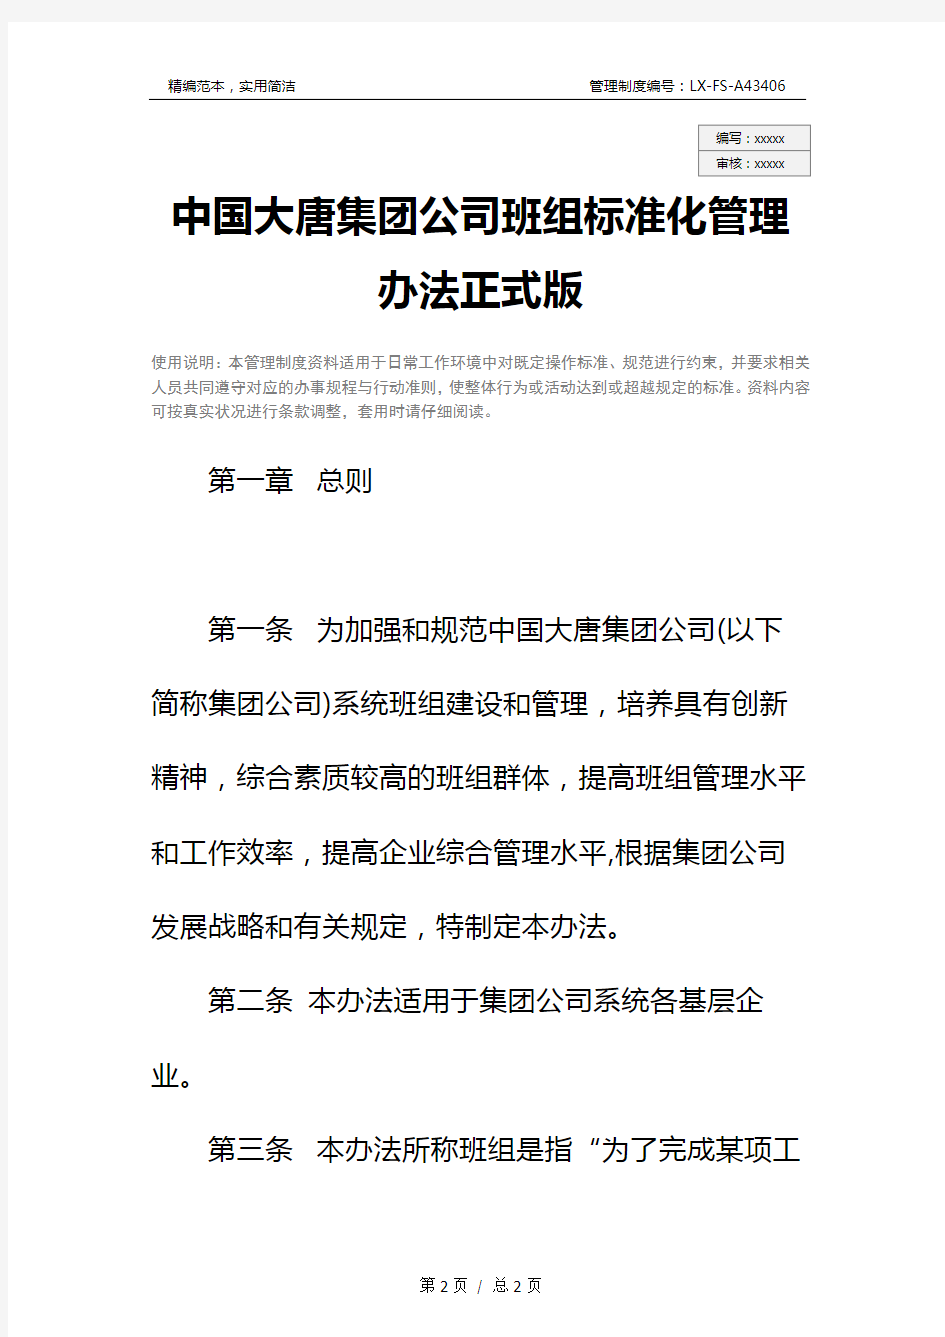 中国大唐集团公司班组标准化管理办法正式版